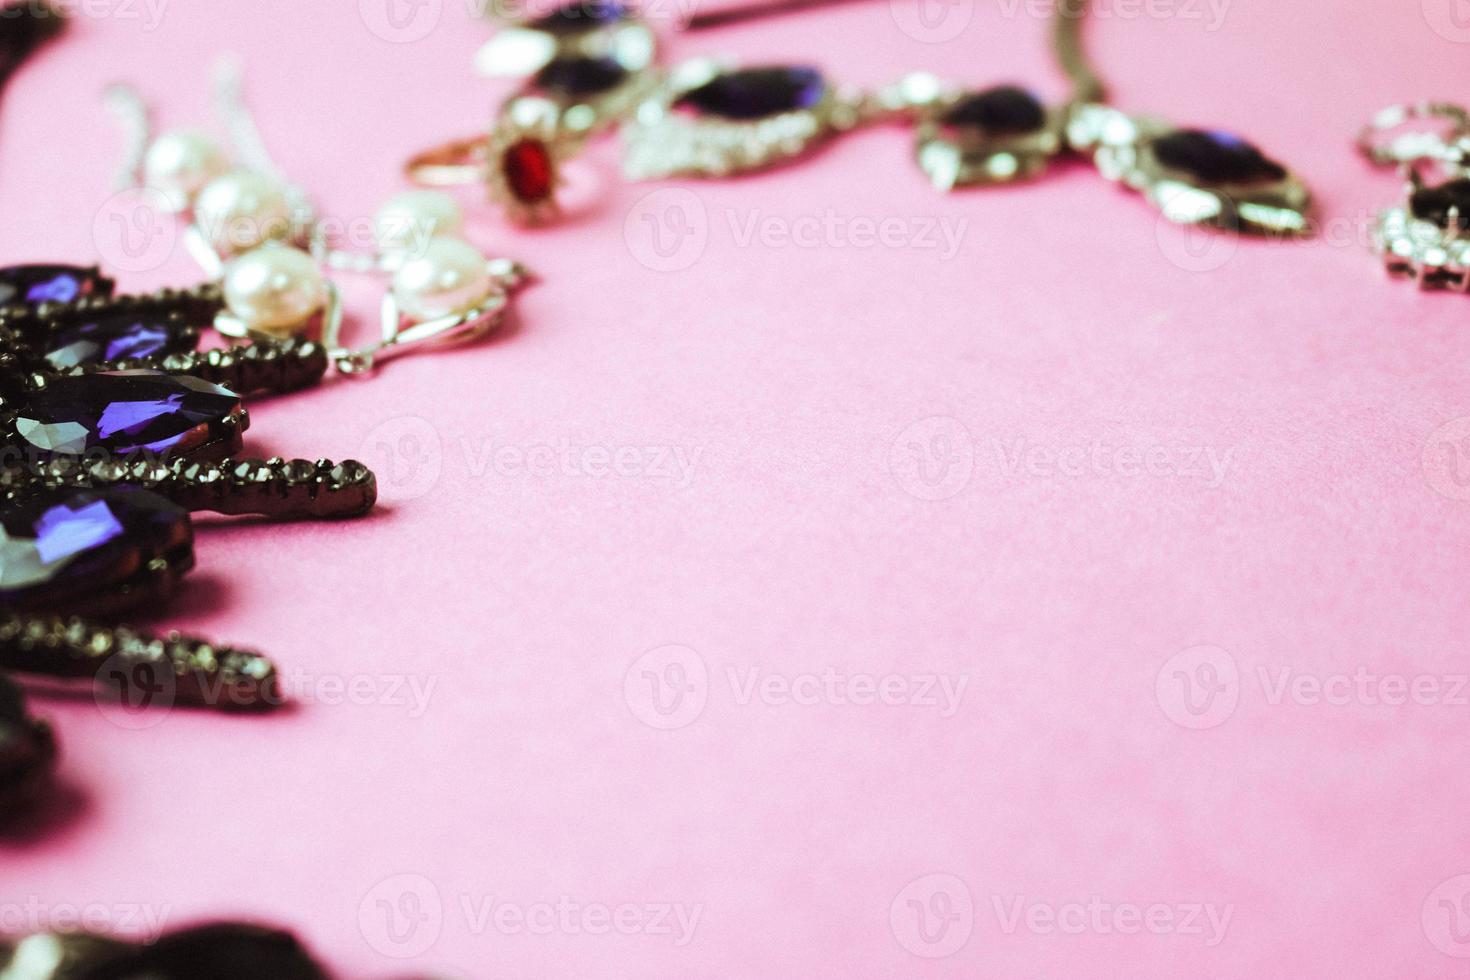 skön dyrbar skinande smycke trendig glamorös Smycken uppsättning, halsband, örhängen, ringar, kedjor, broscher med pärlor och ruter på en rosa lila bakgrund. platt lägga, topp se, kopia plats foto